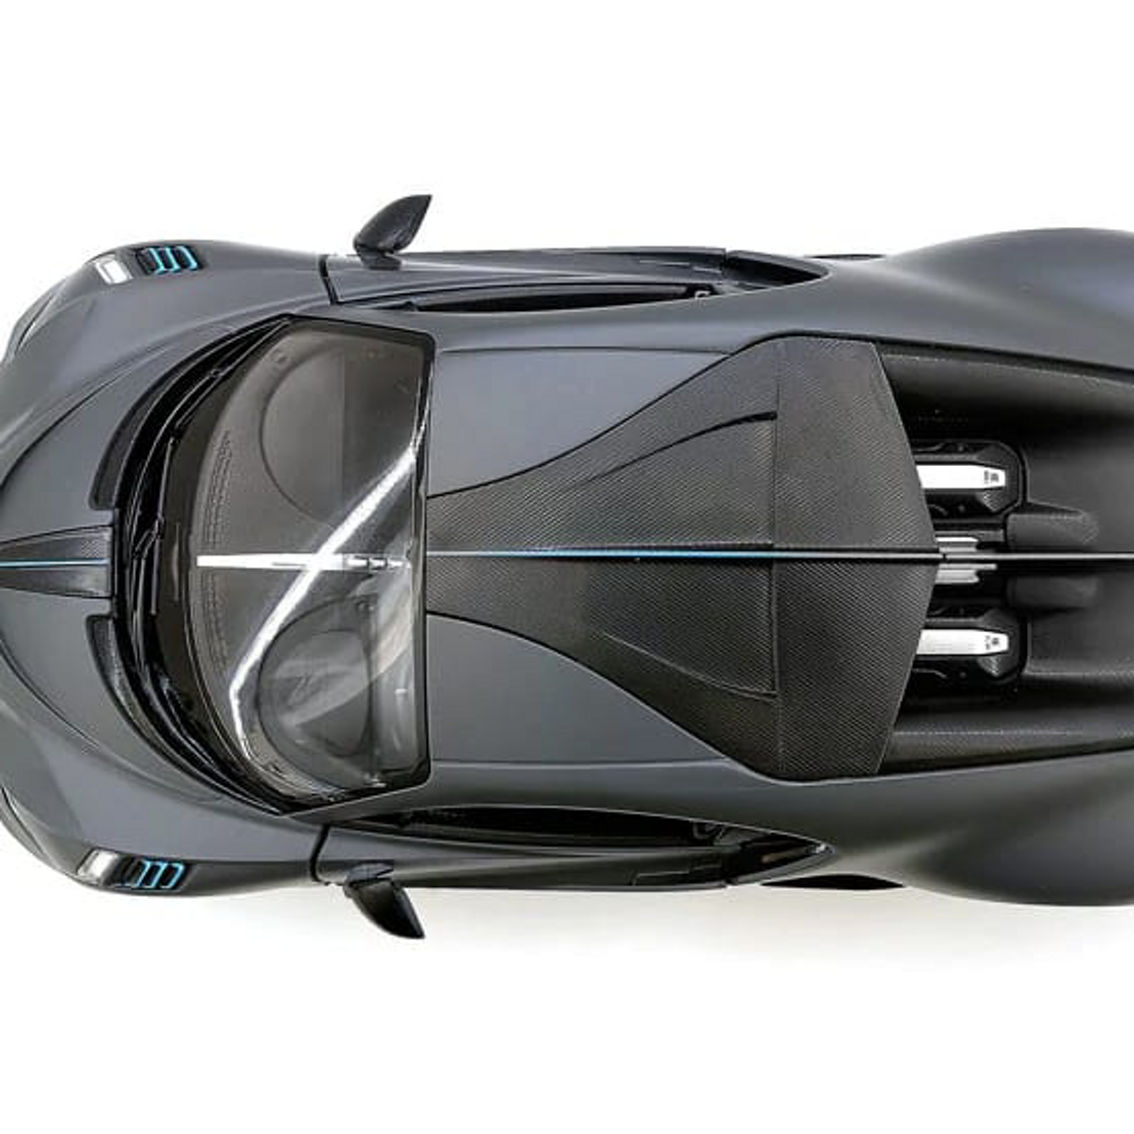 98000-G R/C 1:14 Bugatti Divo - Gray - Image 5 of 5